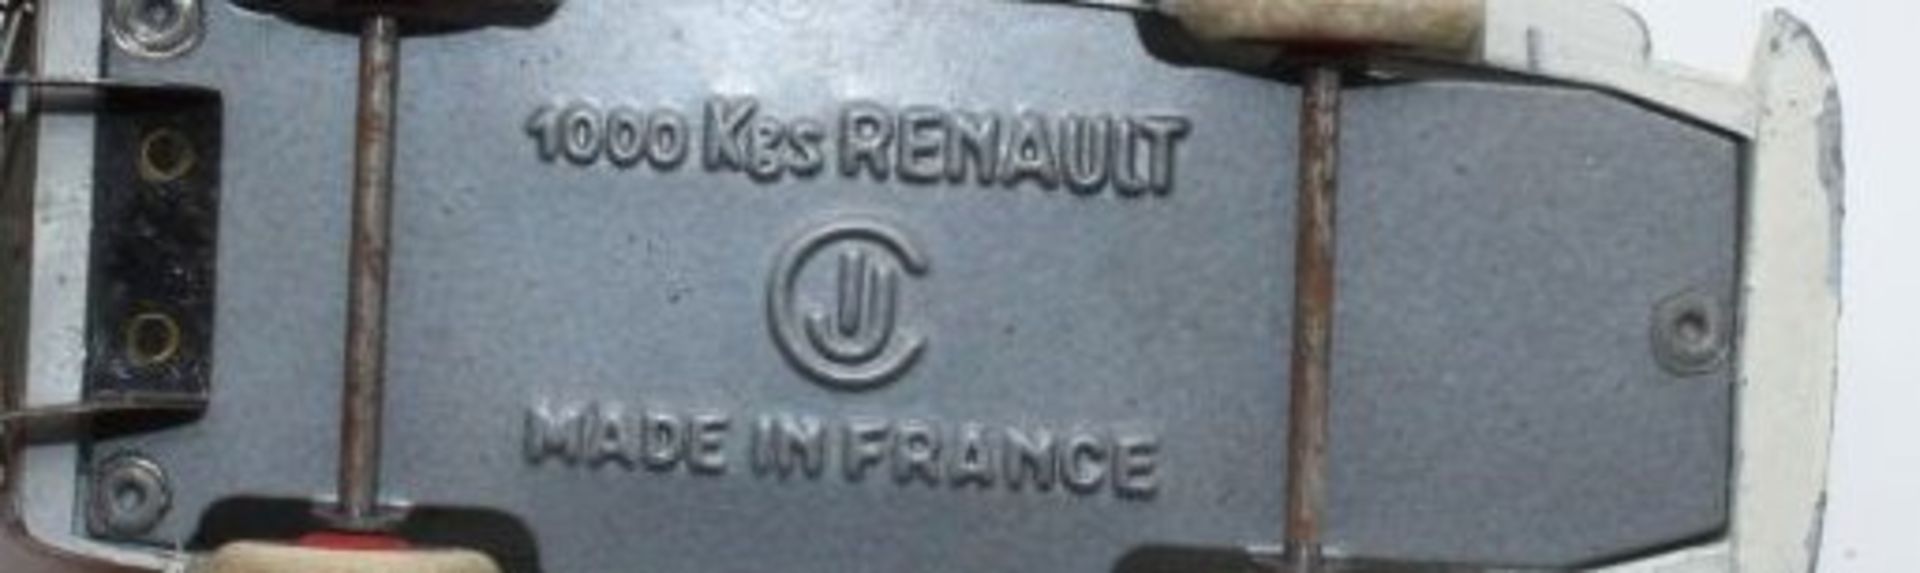 C I J, Renault Ambulance, France, 1:43, bespielte Erhaltung, Schachtel anbei diese mit - Bild 2 aus 2